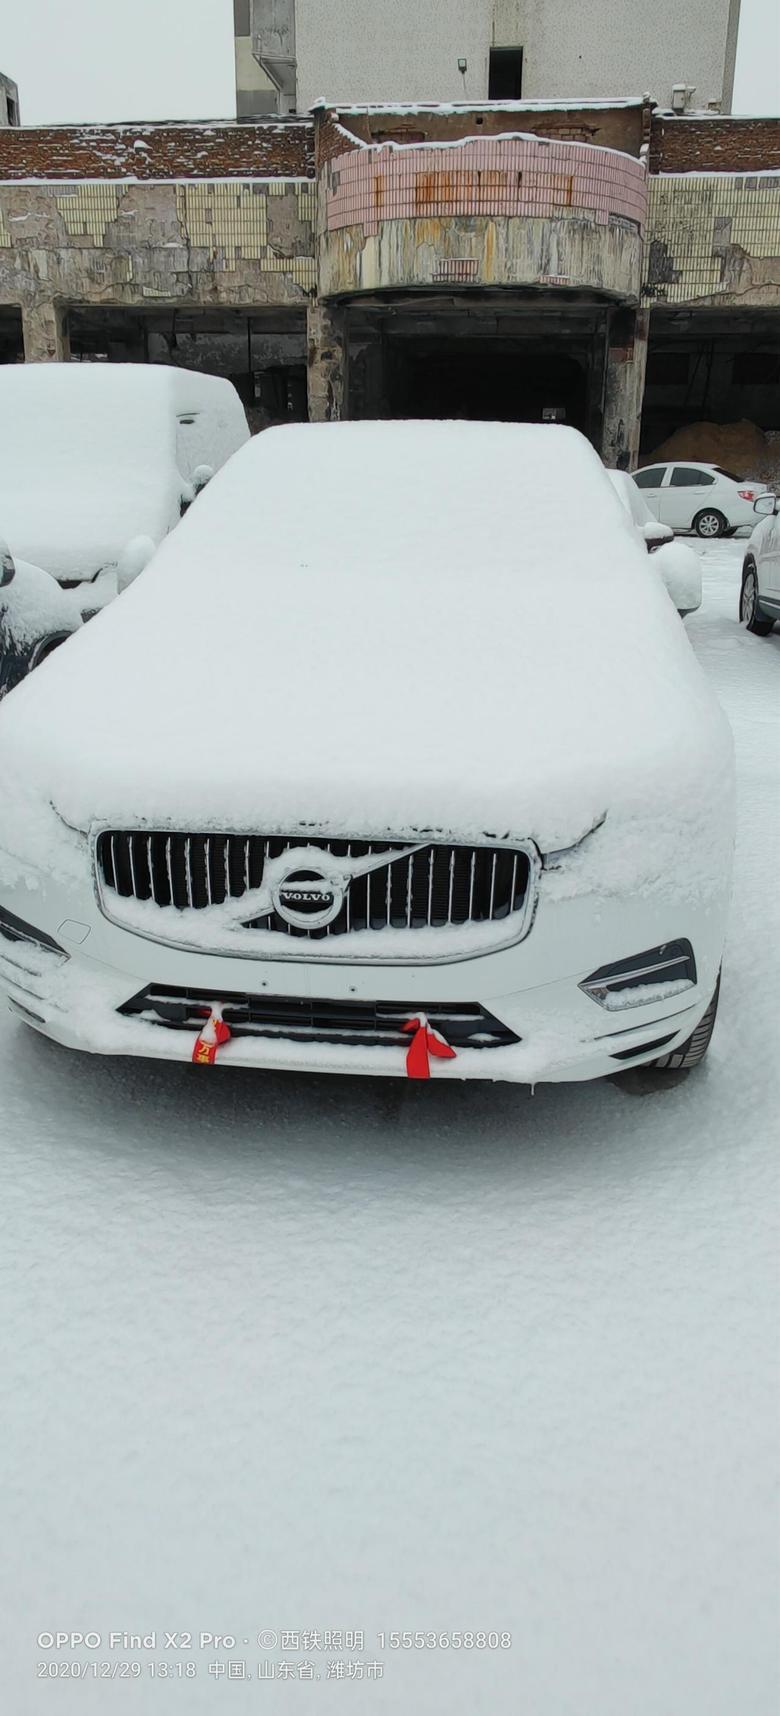 沃尔沃xc60 提车已经接近半个月了，经历了潍坊的第一场大雪，目前新车除了油耗高点，没有其他毛病，希望后期油耗能下来吧，各位大佬安装记录仪了吗，推荐一下啊